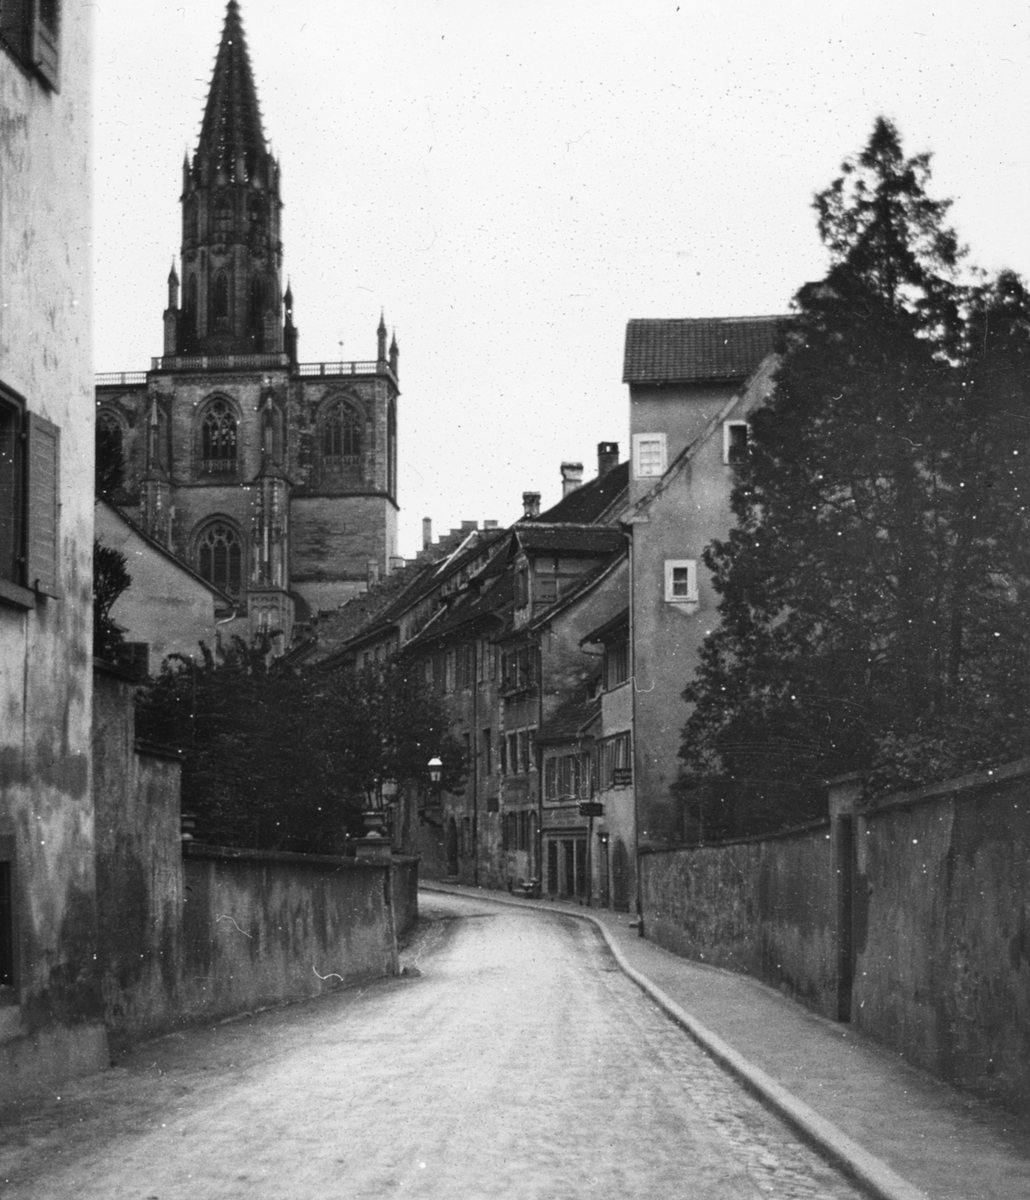 Skioptikonbild med motiv från Konstanz. Gata med katedralen Konstanzer Münster i bakgrunden.
Bilden har förvarats i kartong märkt: Konstanz. 1906